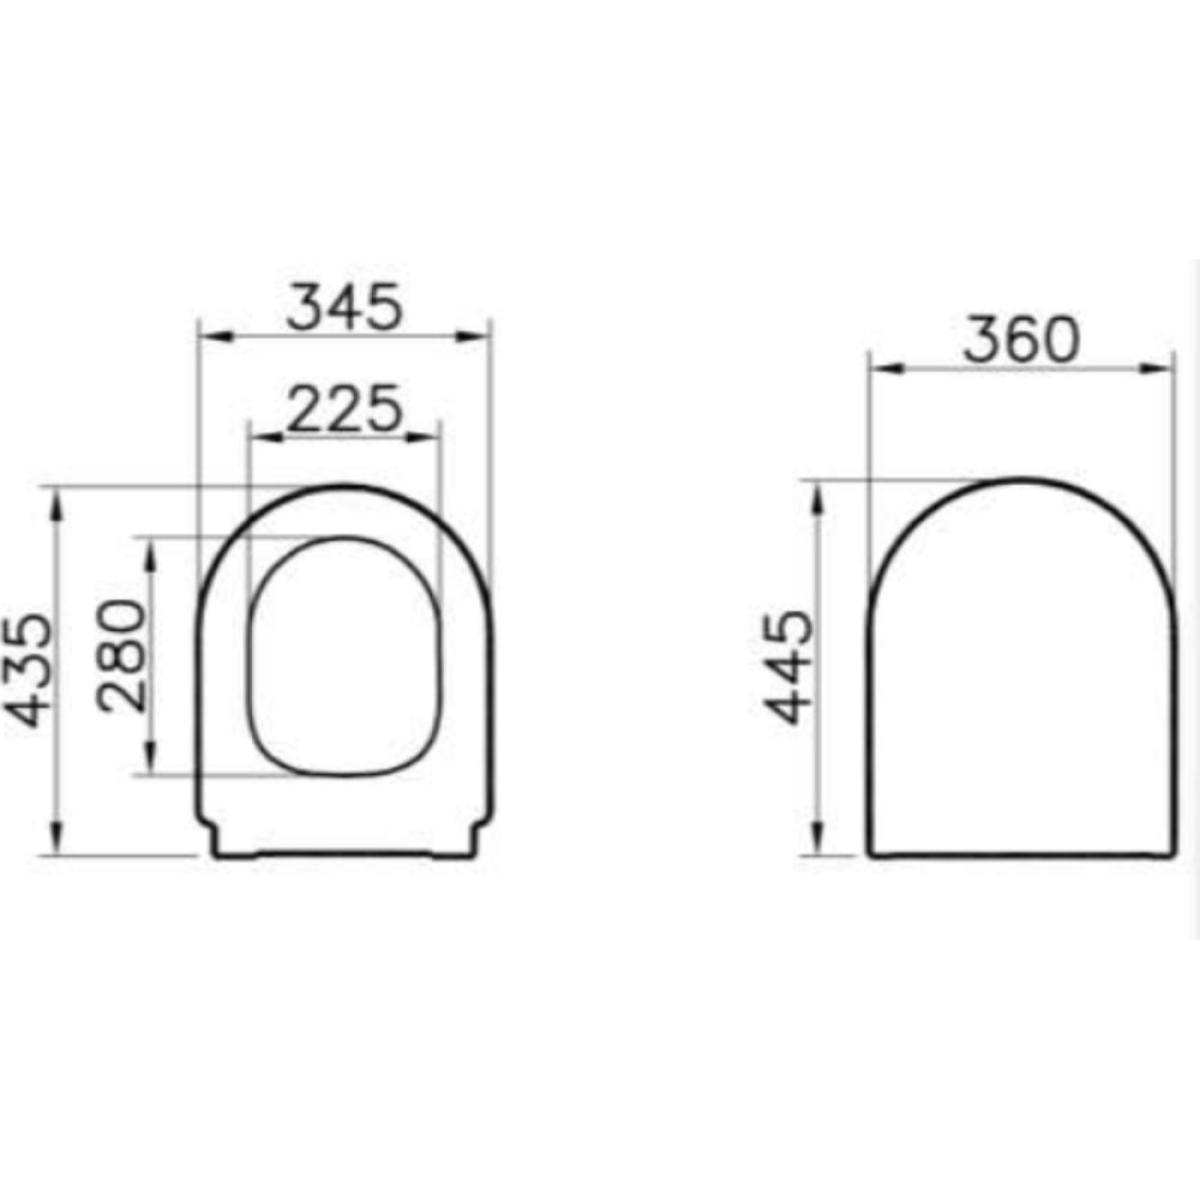 Integra Pack WC à poser sans bride avec abattant frein de chute et réservoir, Blanc (9859-003-7202)